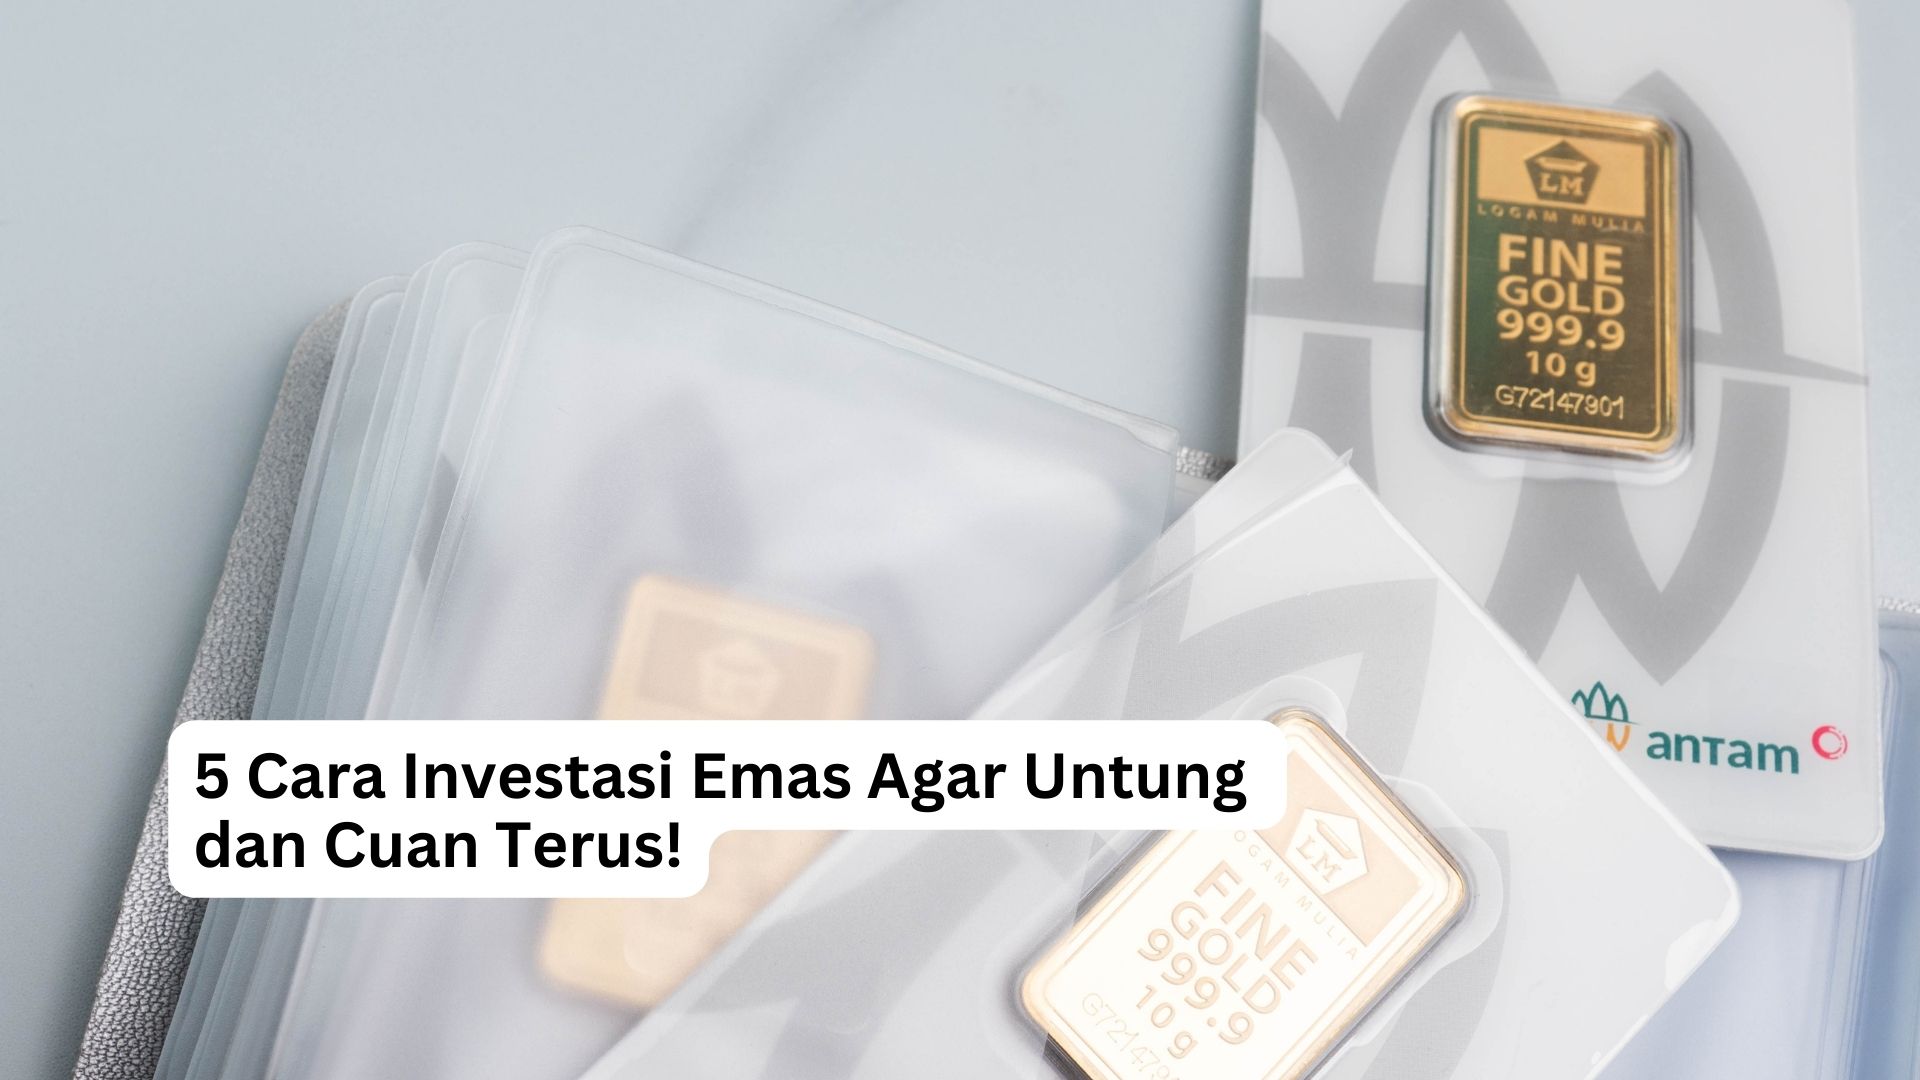 You are currently viewing 5 Cara Investasi Emas Agar Untung dan Cuan Terus!